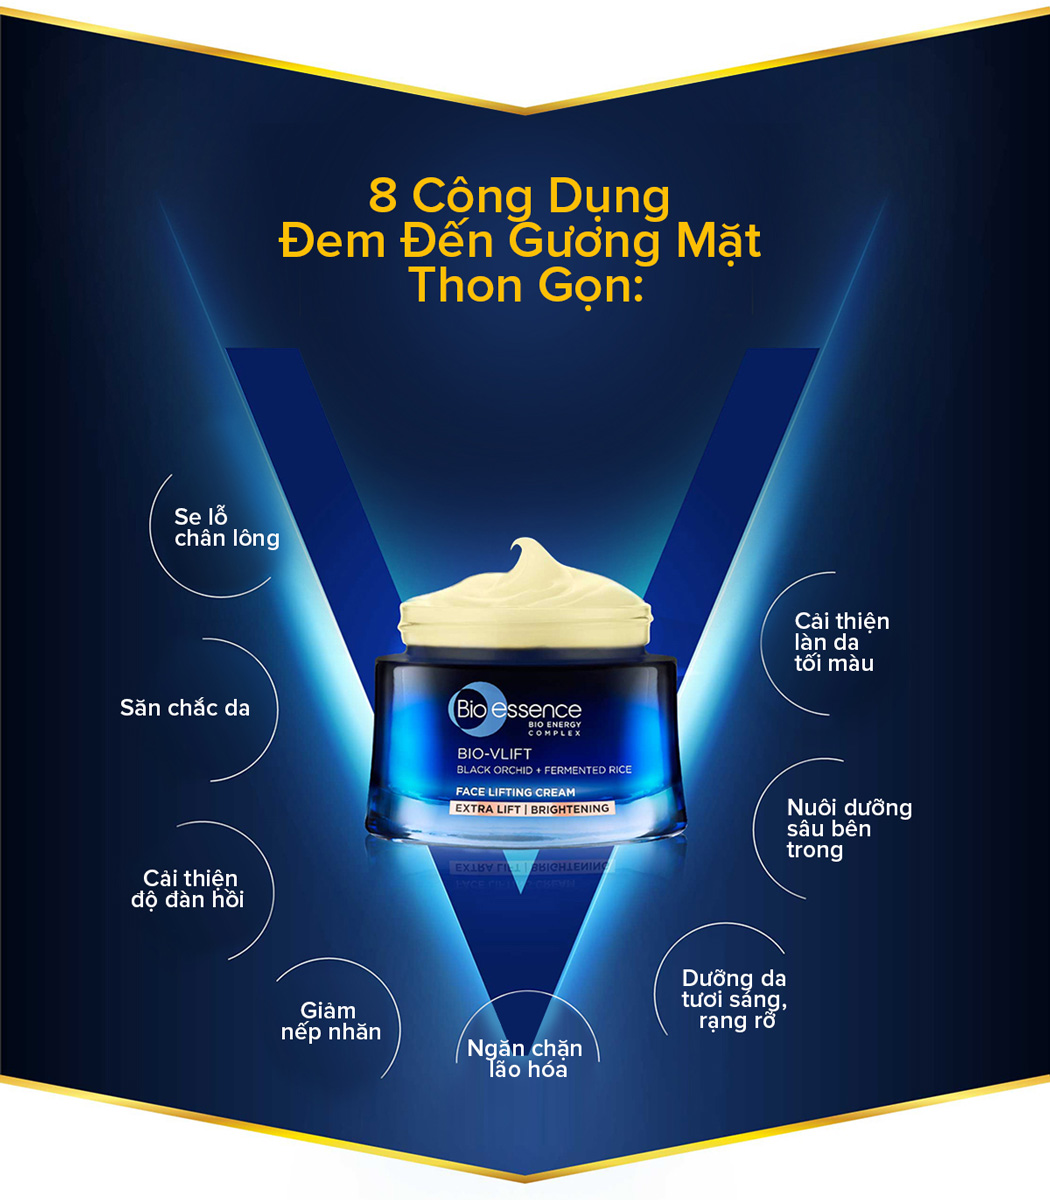 Kem dưỡng Bio-Essence Bio-Vlift Face Lifting Cream có 8 công dụng giúp đem đến gương mặt thon gọn, săn chắc.